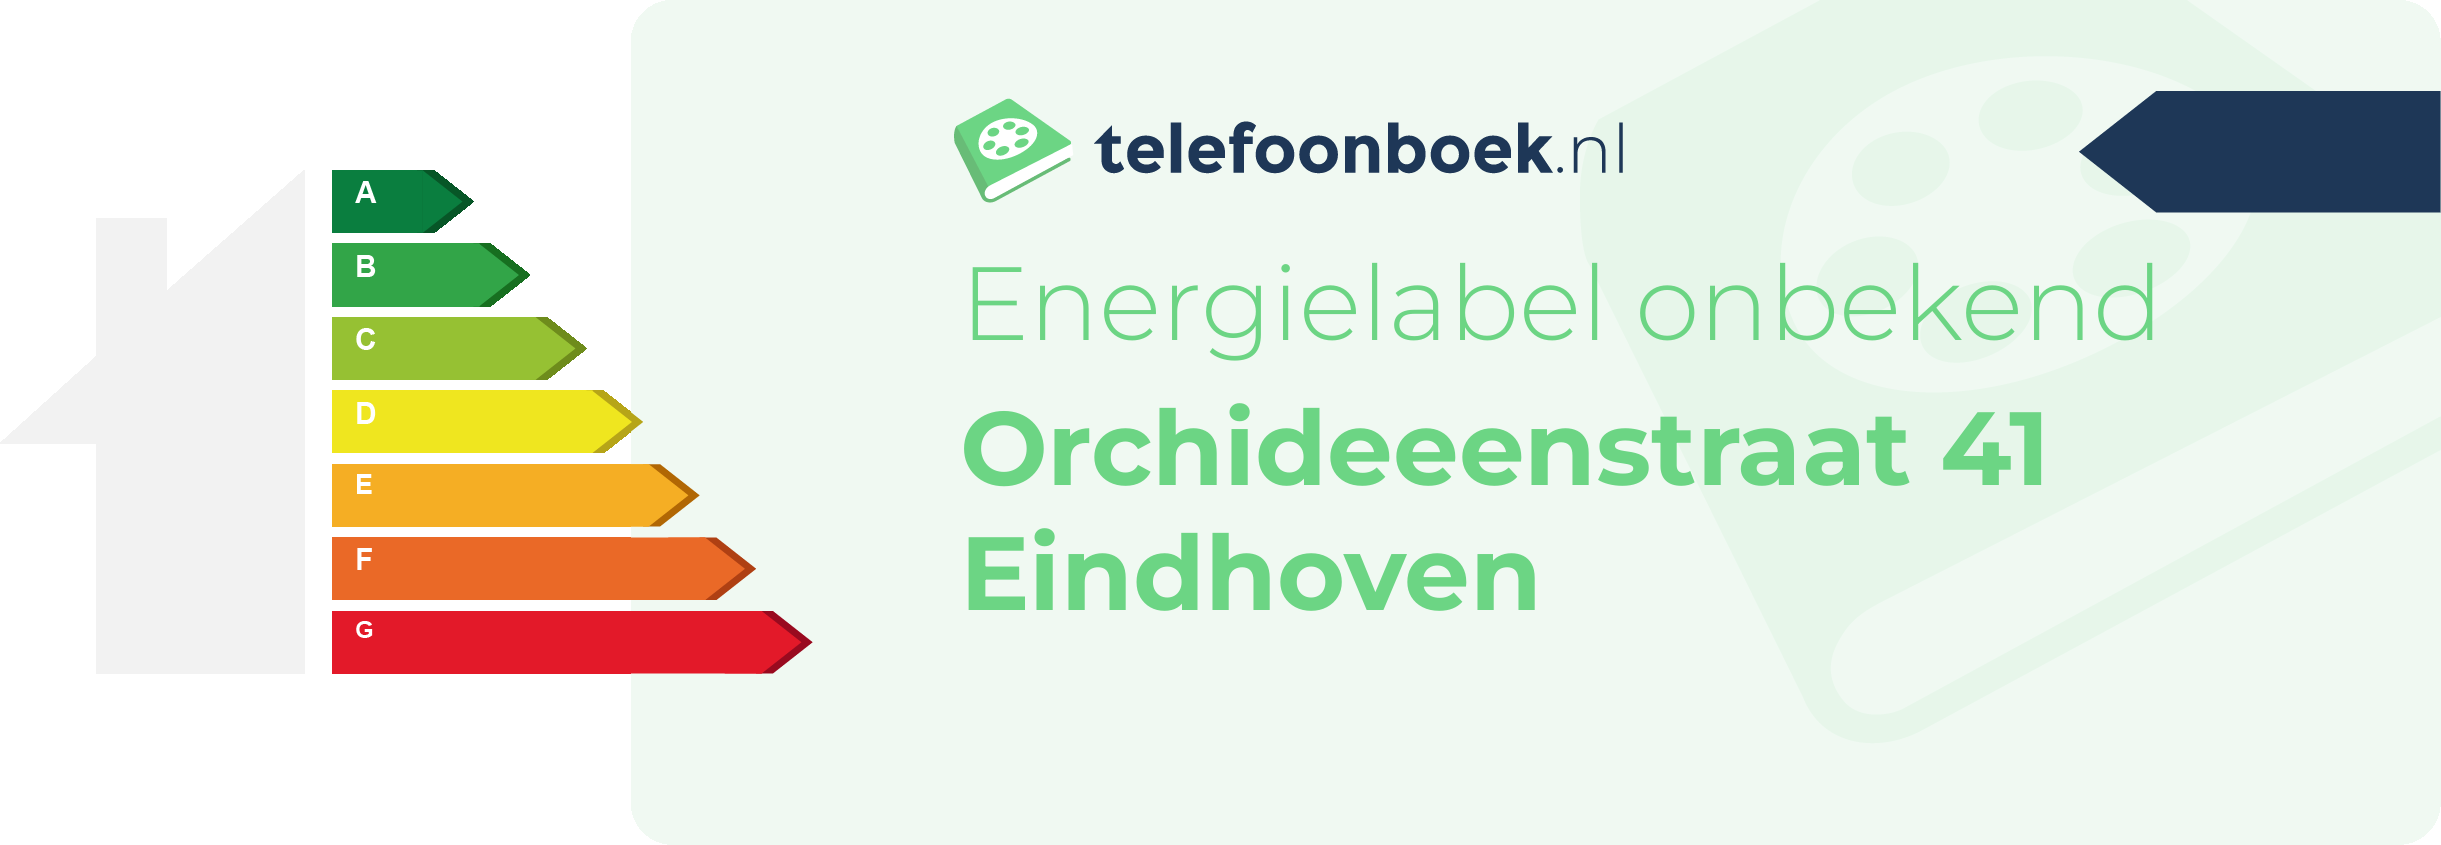 Energielabel Orchideeenstraat 41 Eindhoven